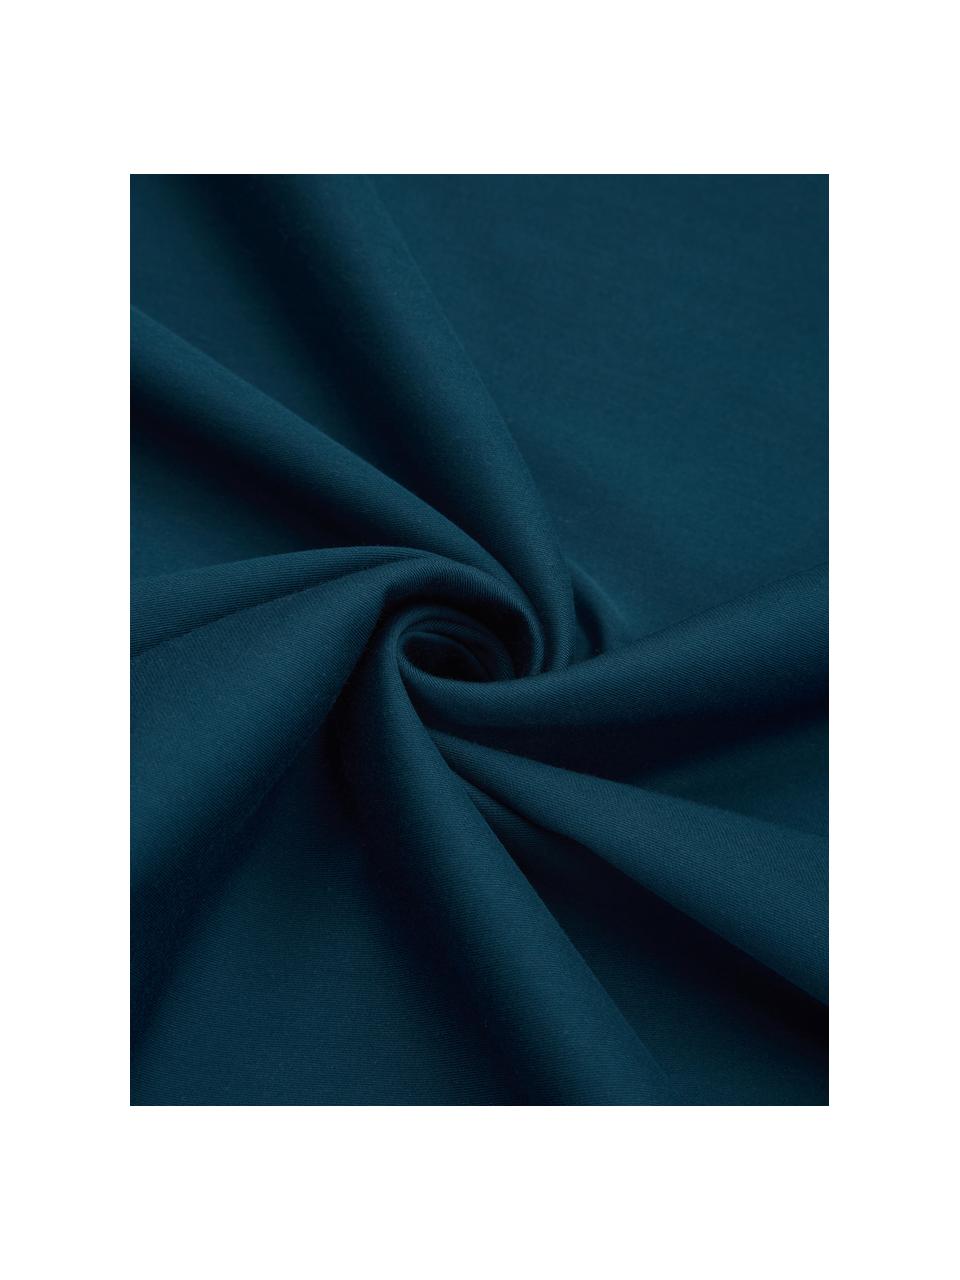 Poszewka na poduszkę z organicznej satyny bawełnianej Akina, 2 szt., Wielobarwny, ciemny niebieski, S 40 x D 80 cm